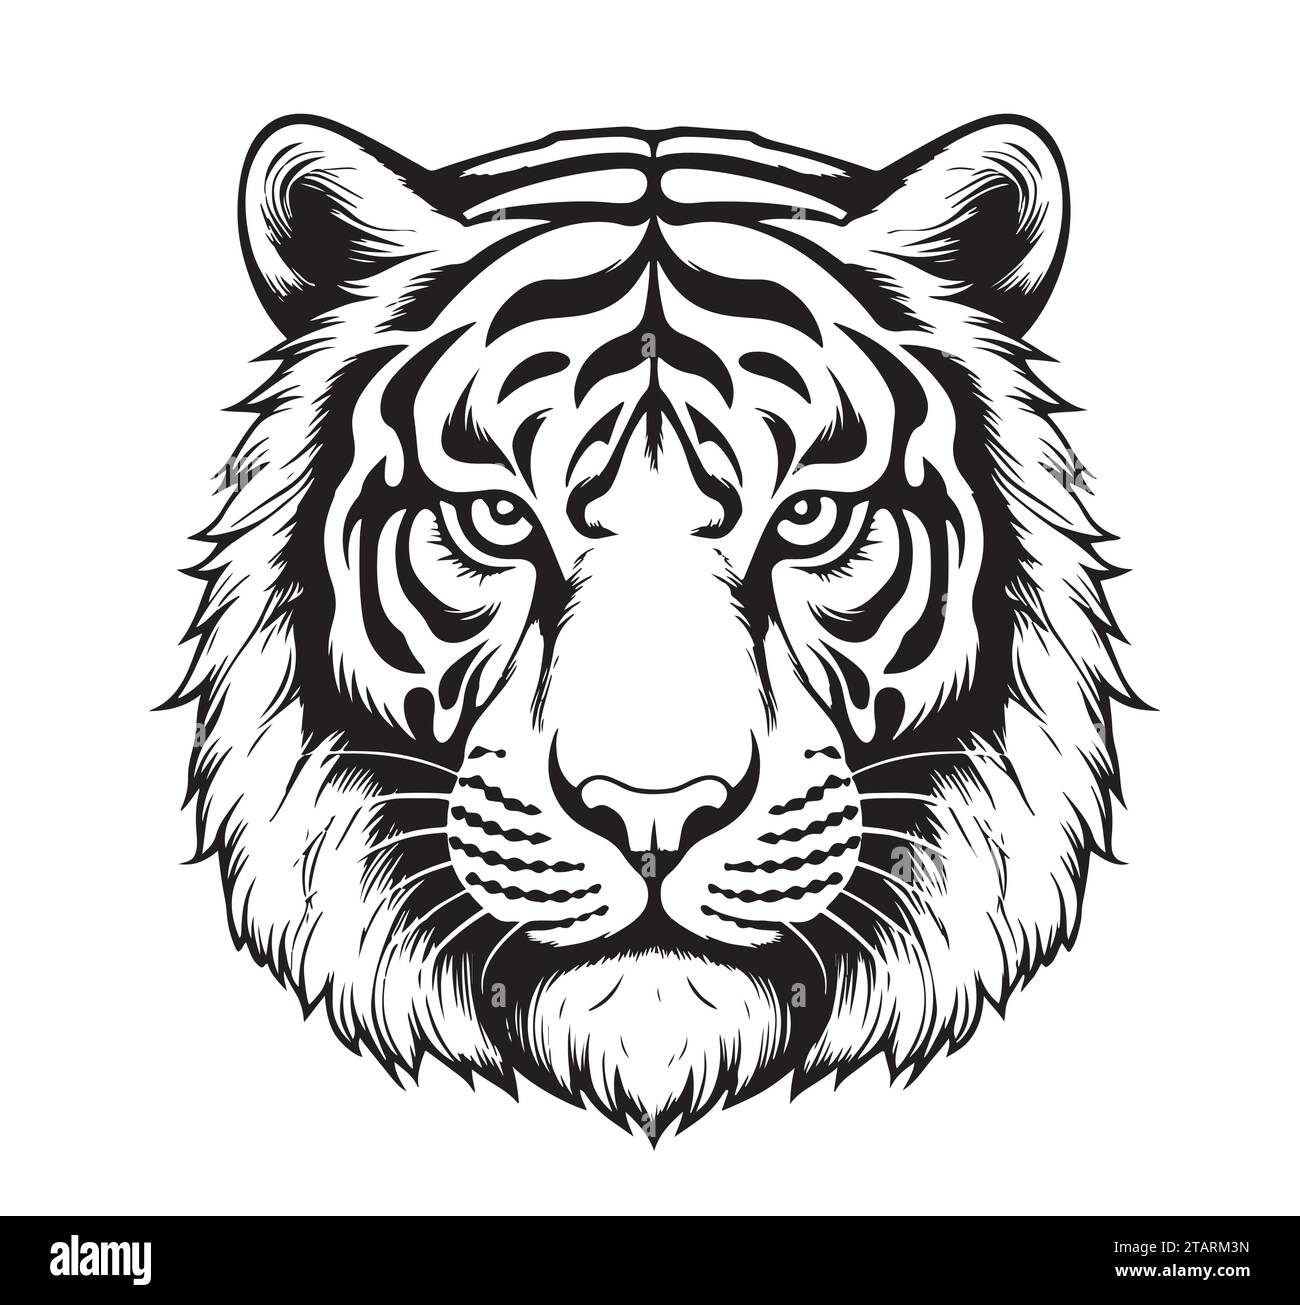 Tigre dessiné avec de l'encre des mains d'un tatouage prédateur illustration vectorielle Illustration de Vecteur